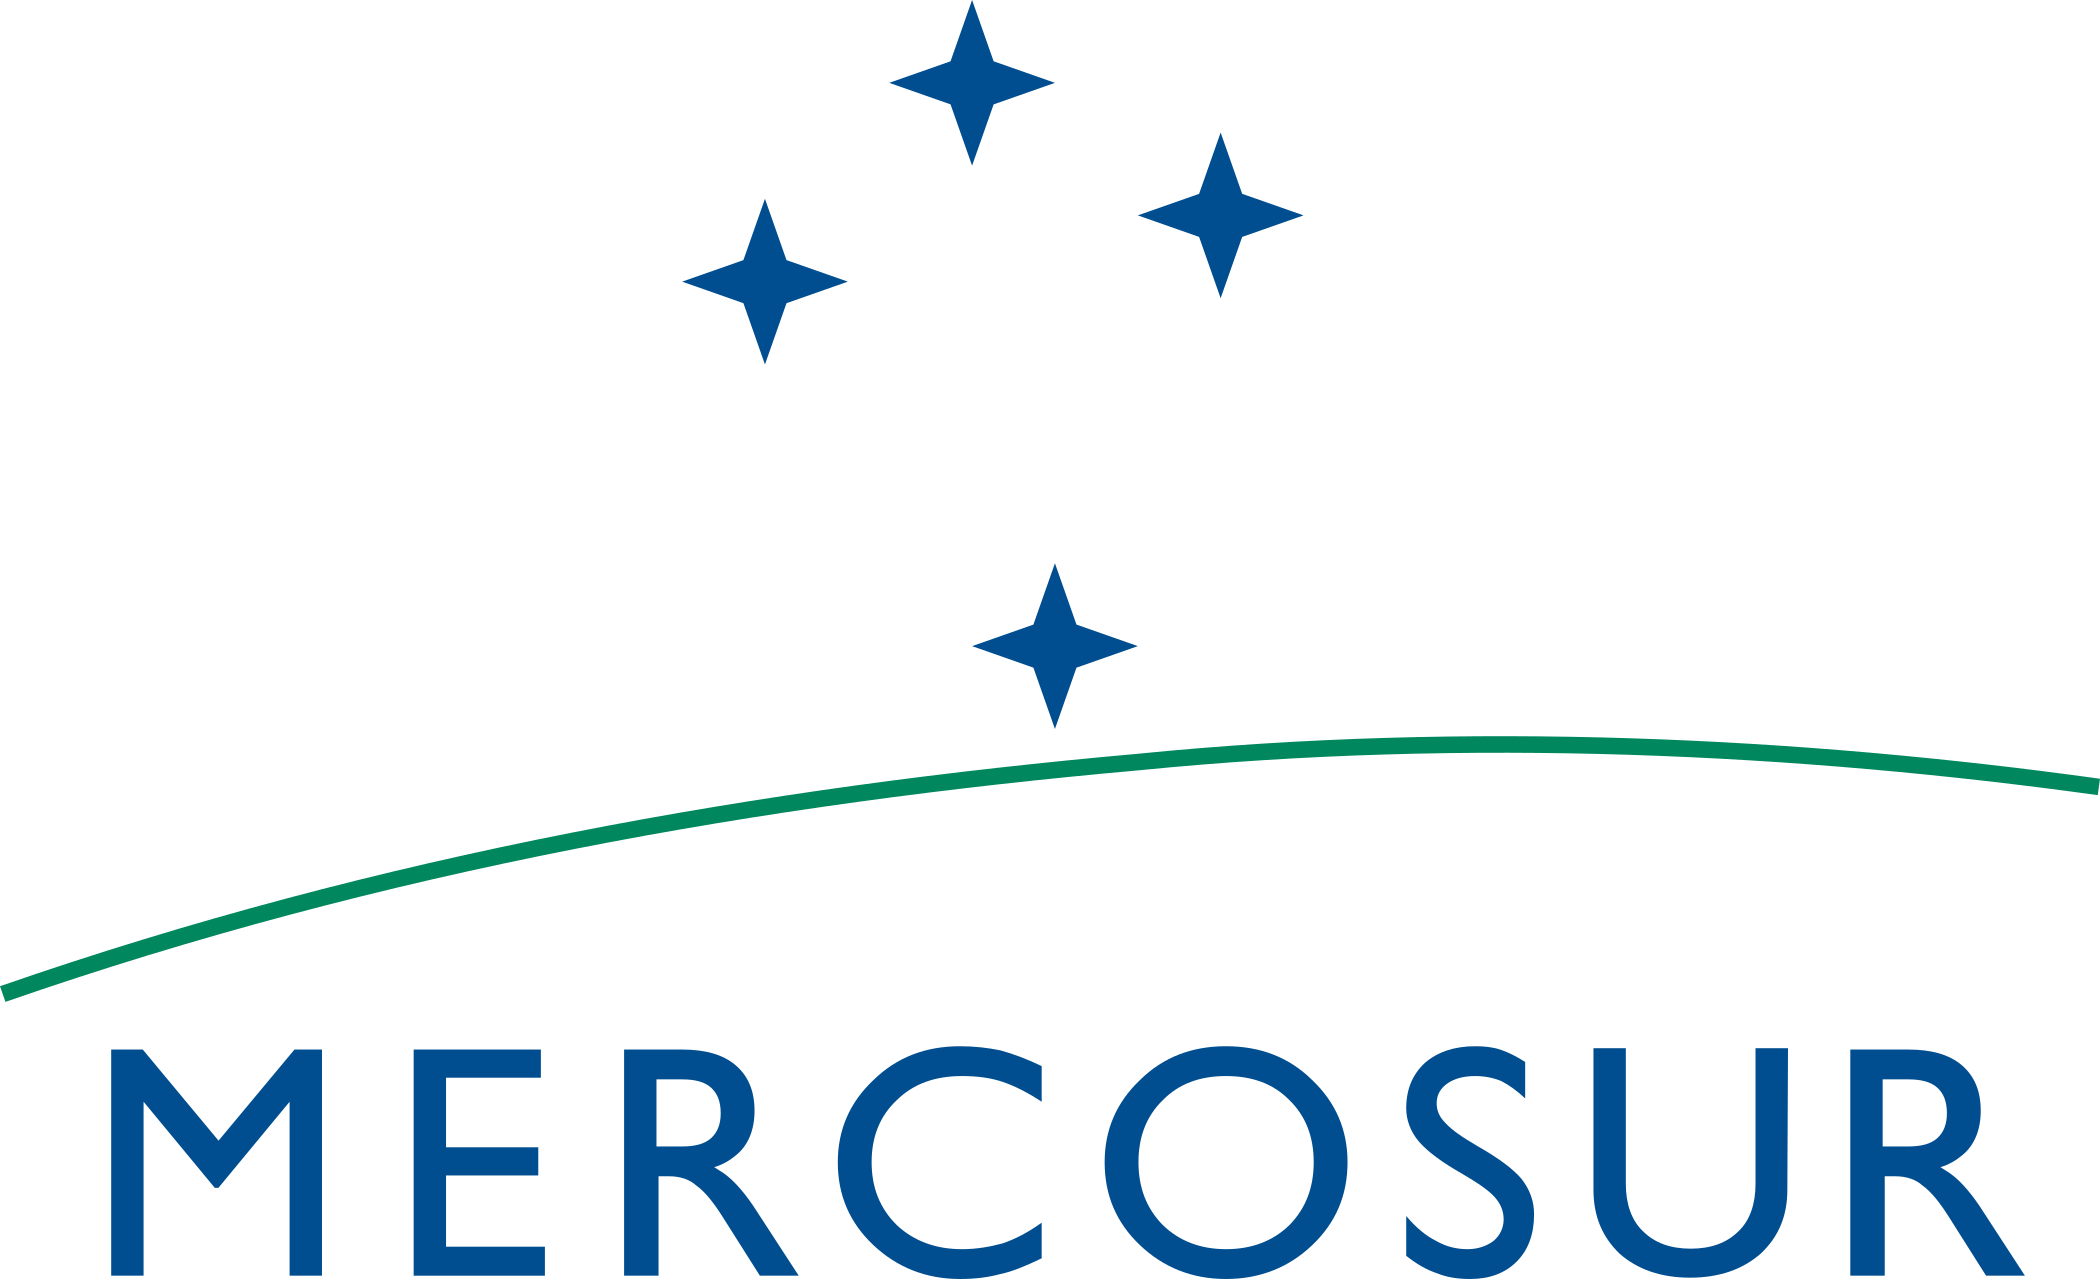 mercosur logo 1 - Mercosur Logo